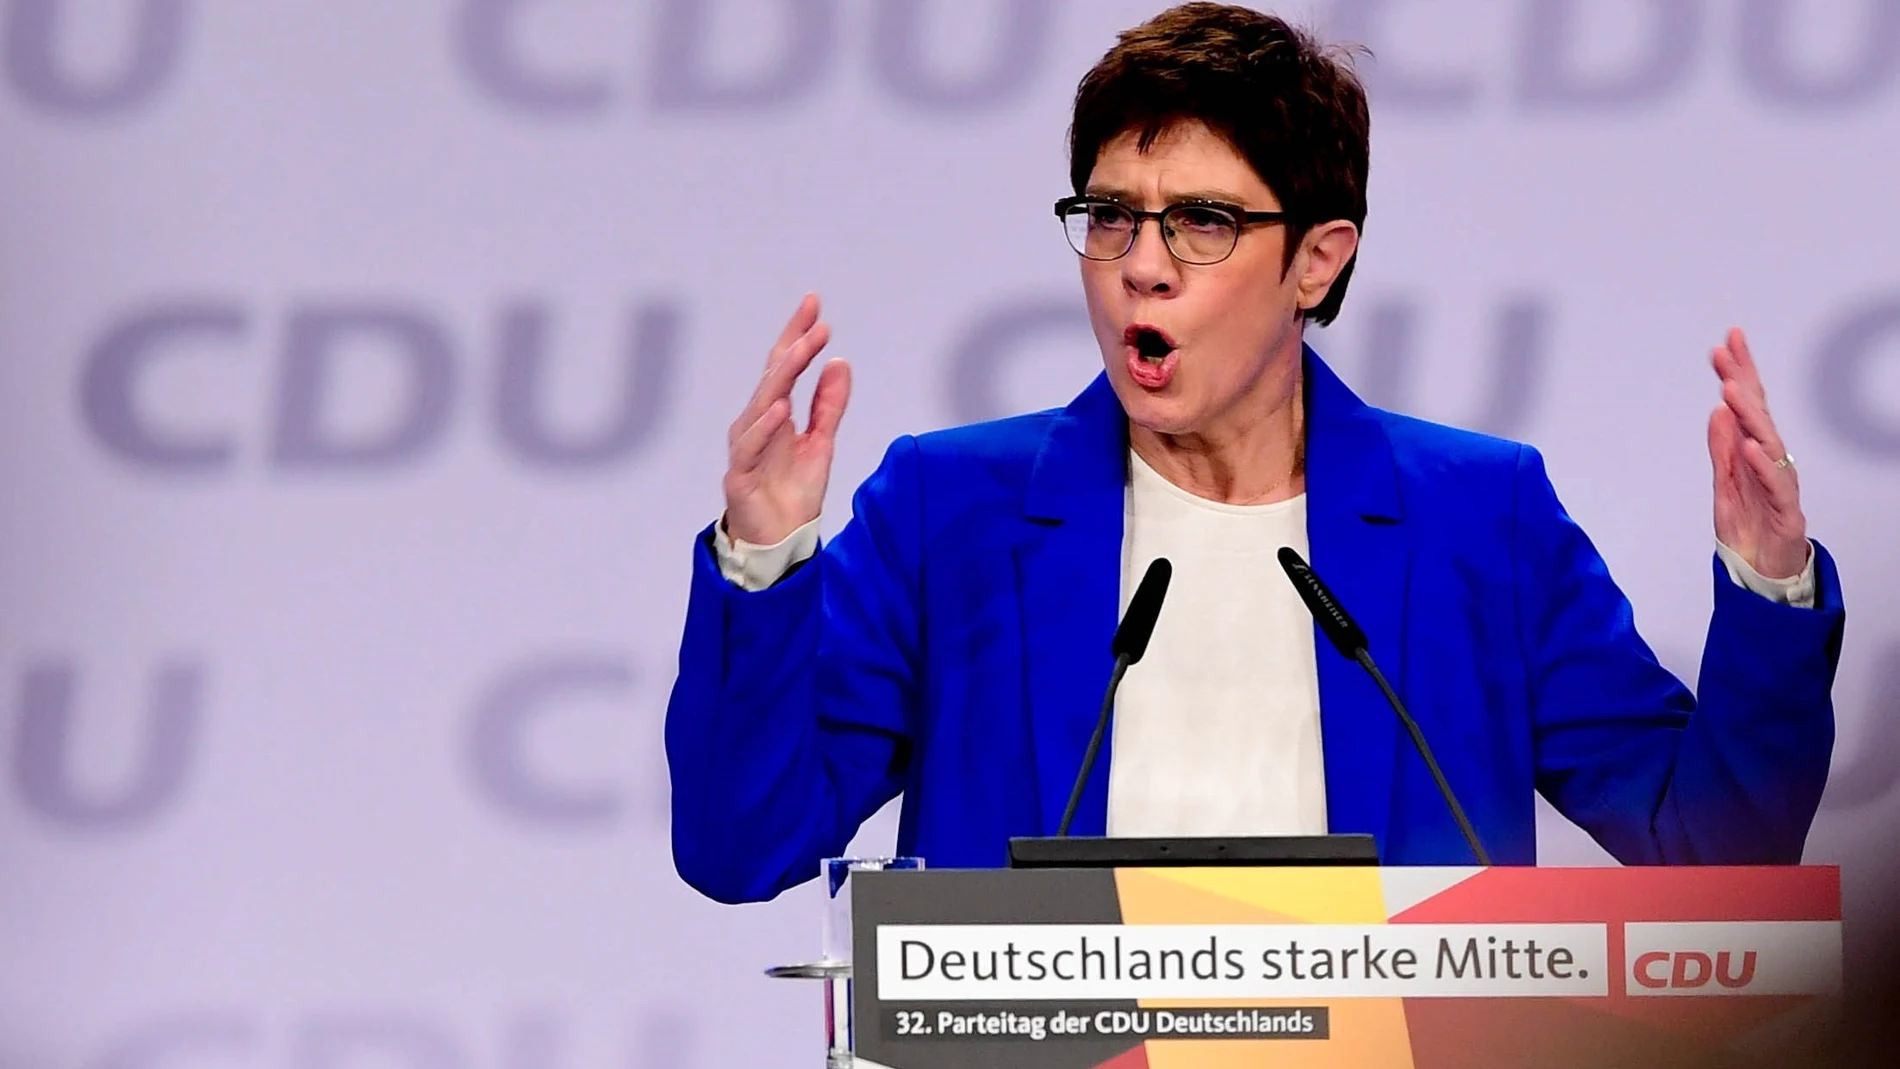 Merkel llama a completar trabajo de su coalición "por Europa y por Alemania"